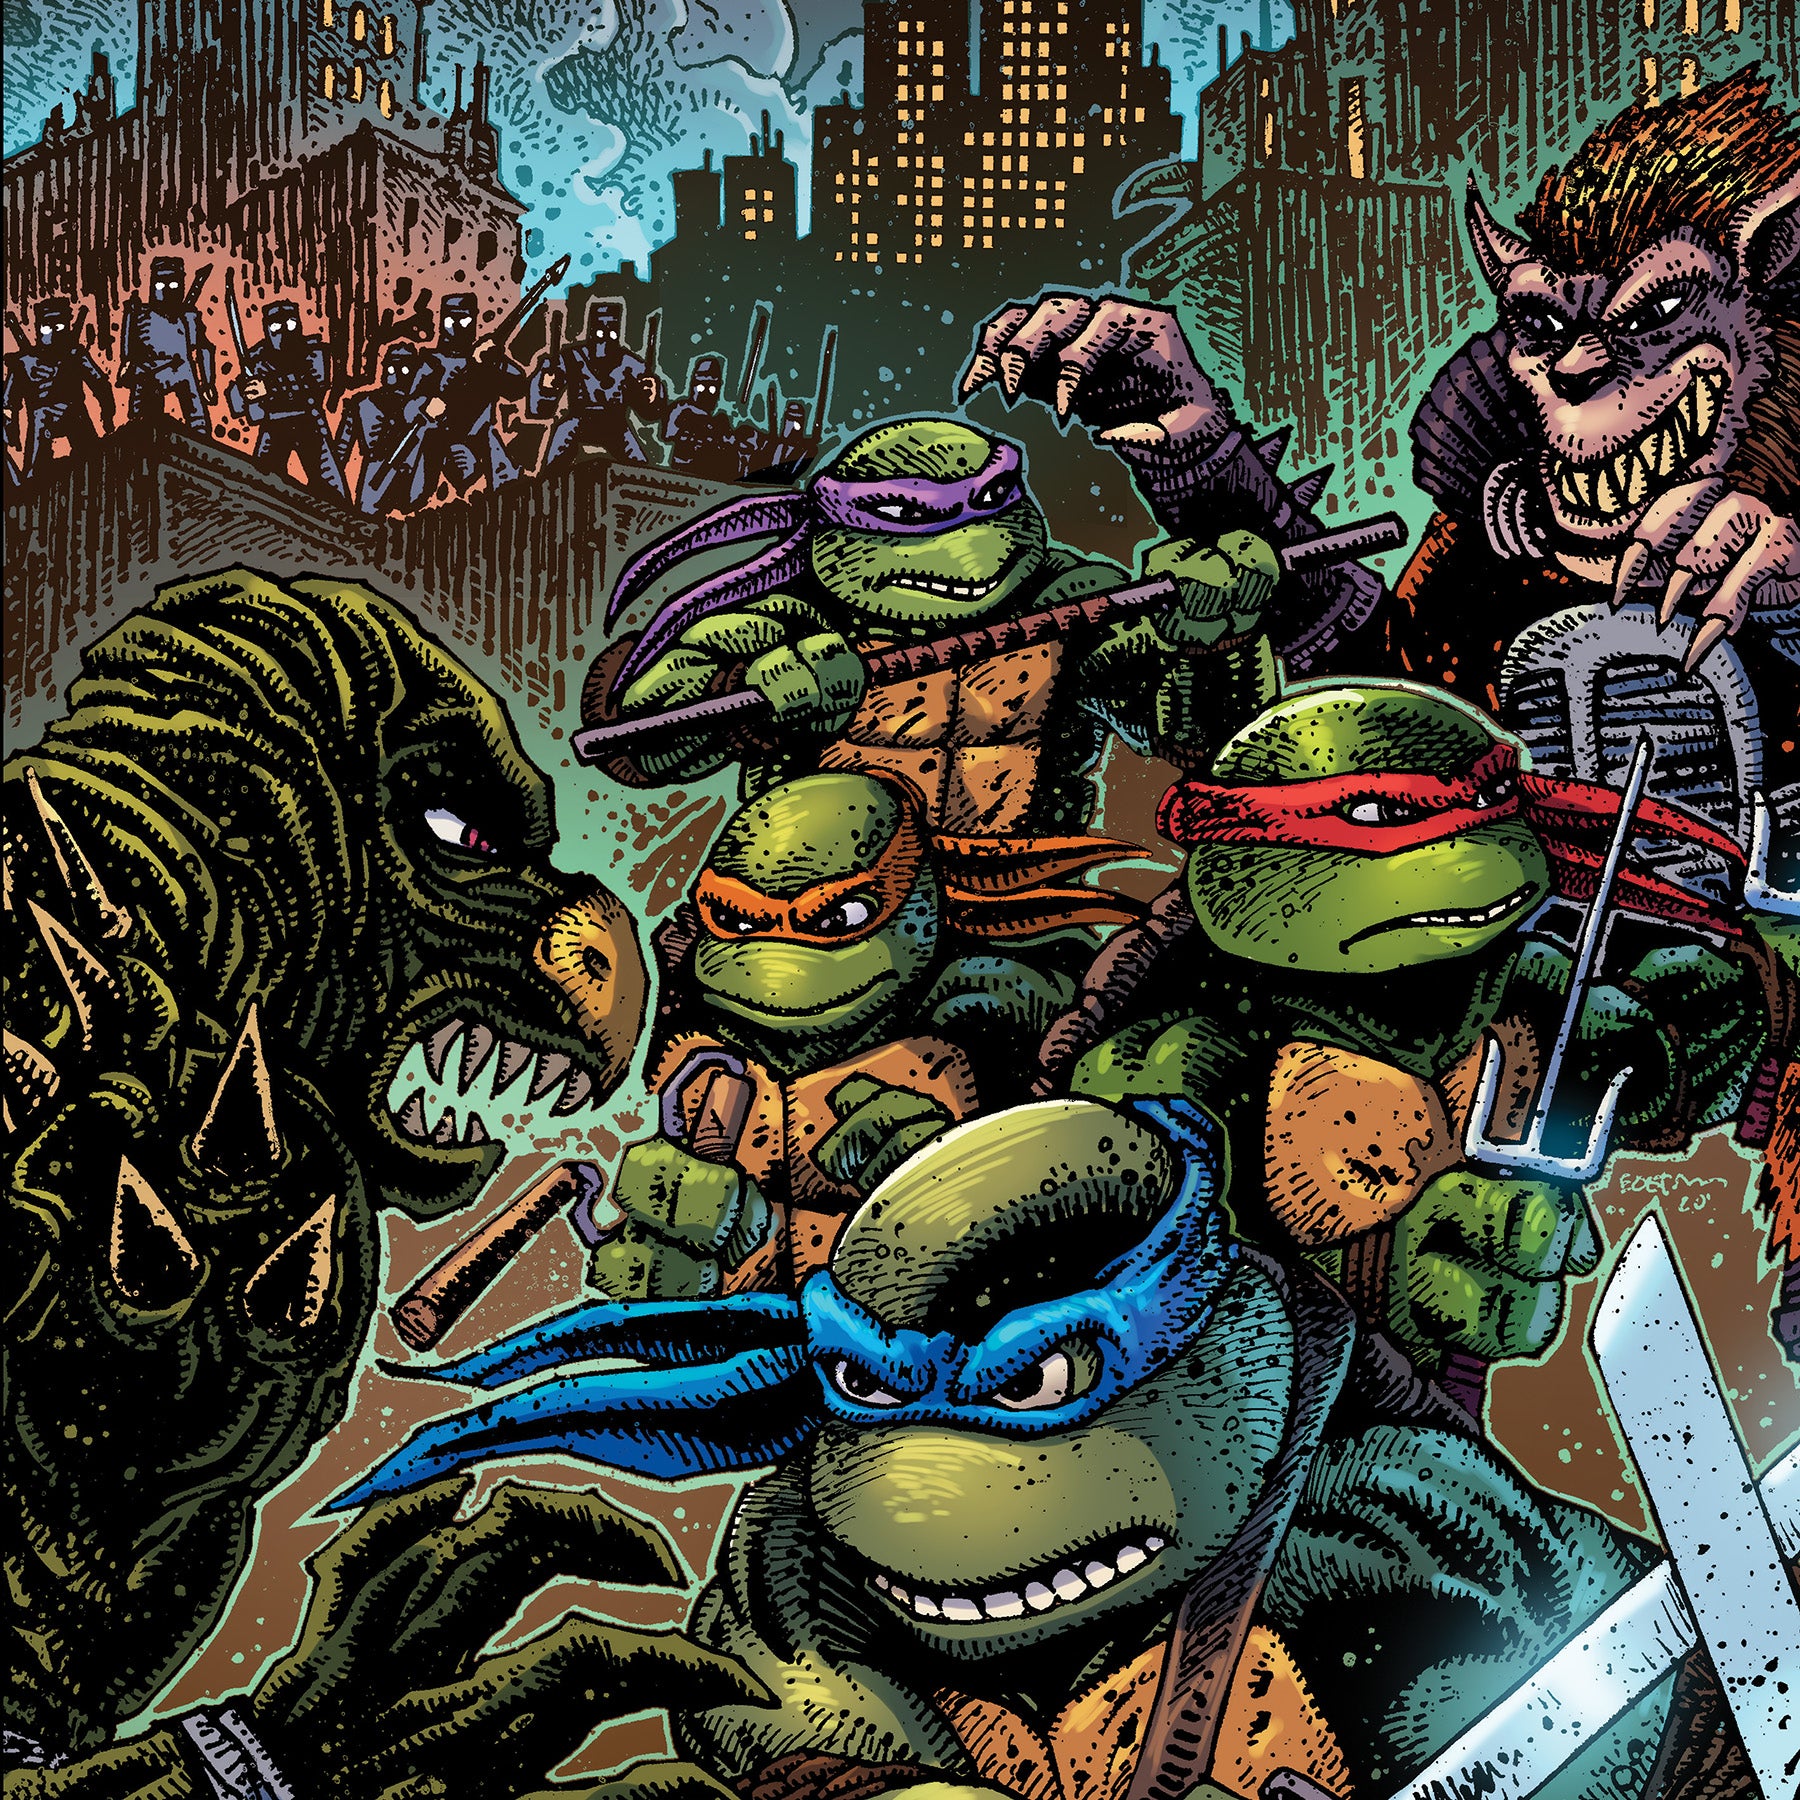 Tartarugas Ninjas  Teenage mutant ninja turtles, Teenage mutant ninja,  Ninja turtles